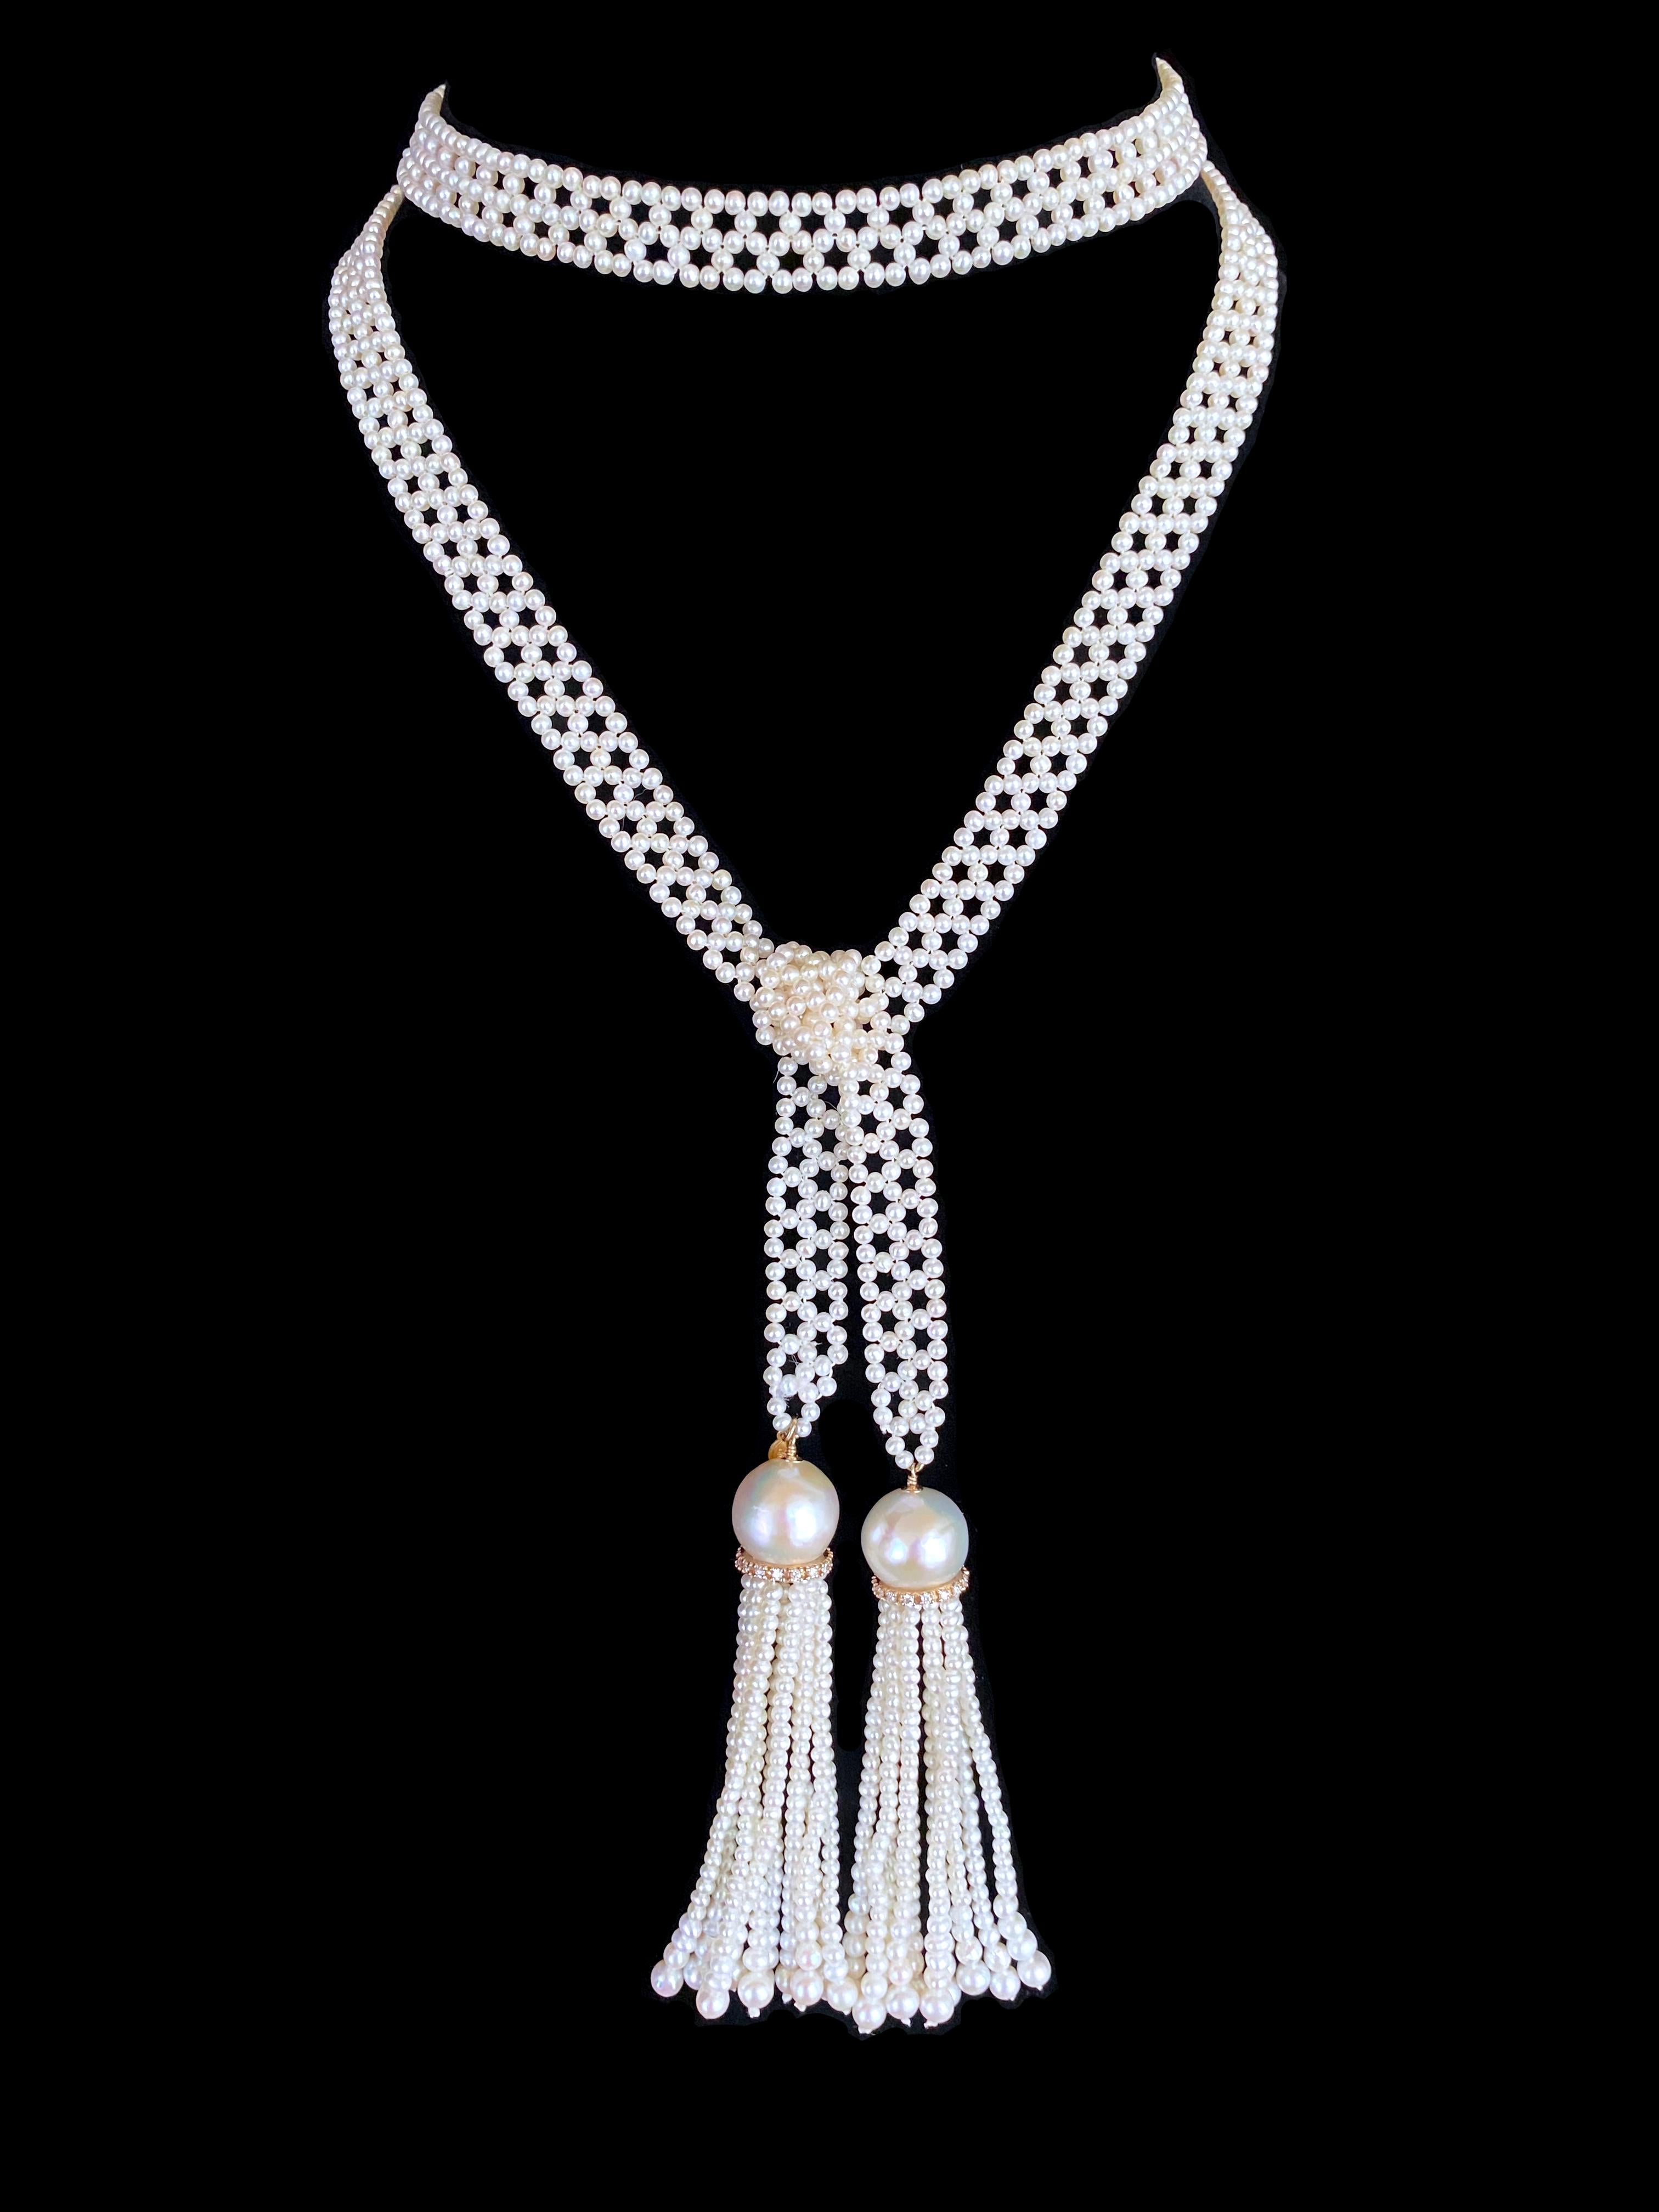 Magnifique et élégant Sautoir classique de Marina J. Ce Sautoir est composé de perles de rocailles parfaites, tissées de façon complexe pour former un motif fin semblable à de la dentelle. Mesurant 37,5 pouces de long sans les glands, ce sautoir se